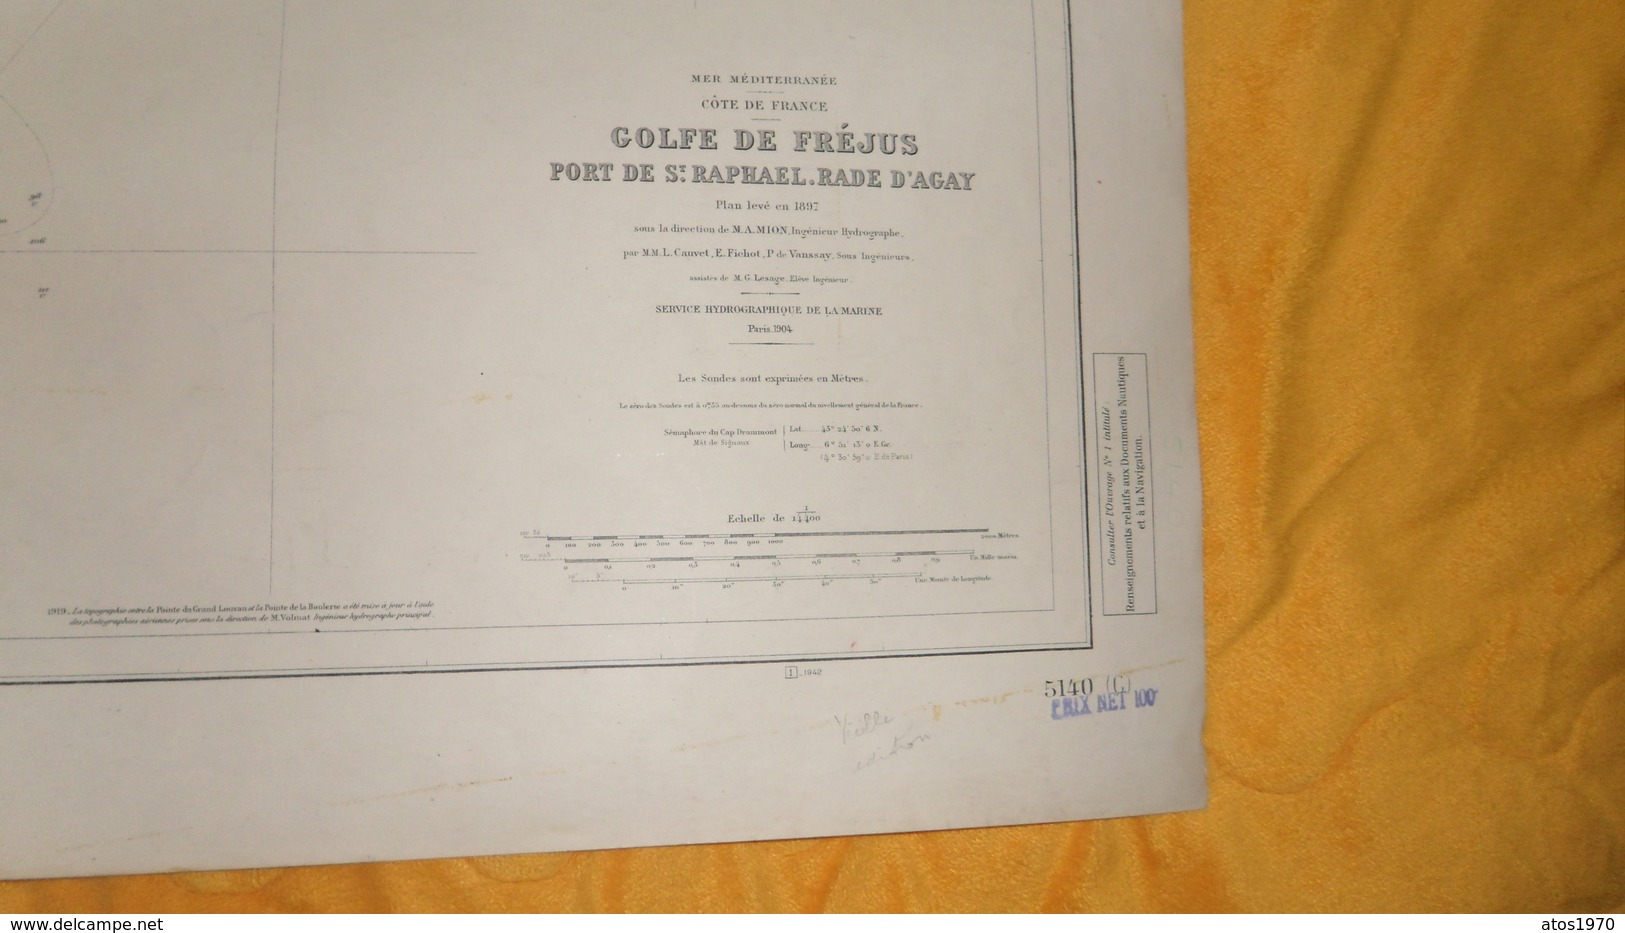 CARTE ANCIENNE SERVICE HYDROGRAPHIQUE DE LA MARINE PARIS 1904. EDITION DE 1934. / GOLFE DE FREJUS PORT DE ST RAPHAEL RAD - Cartes Marines